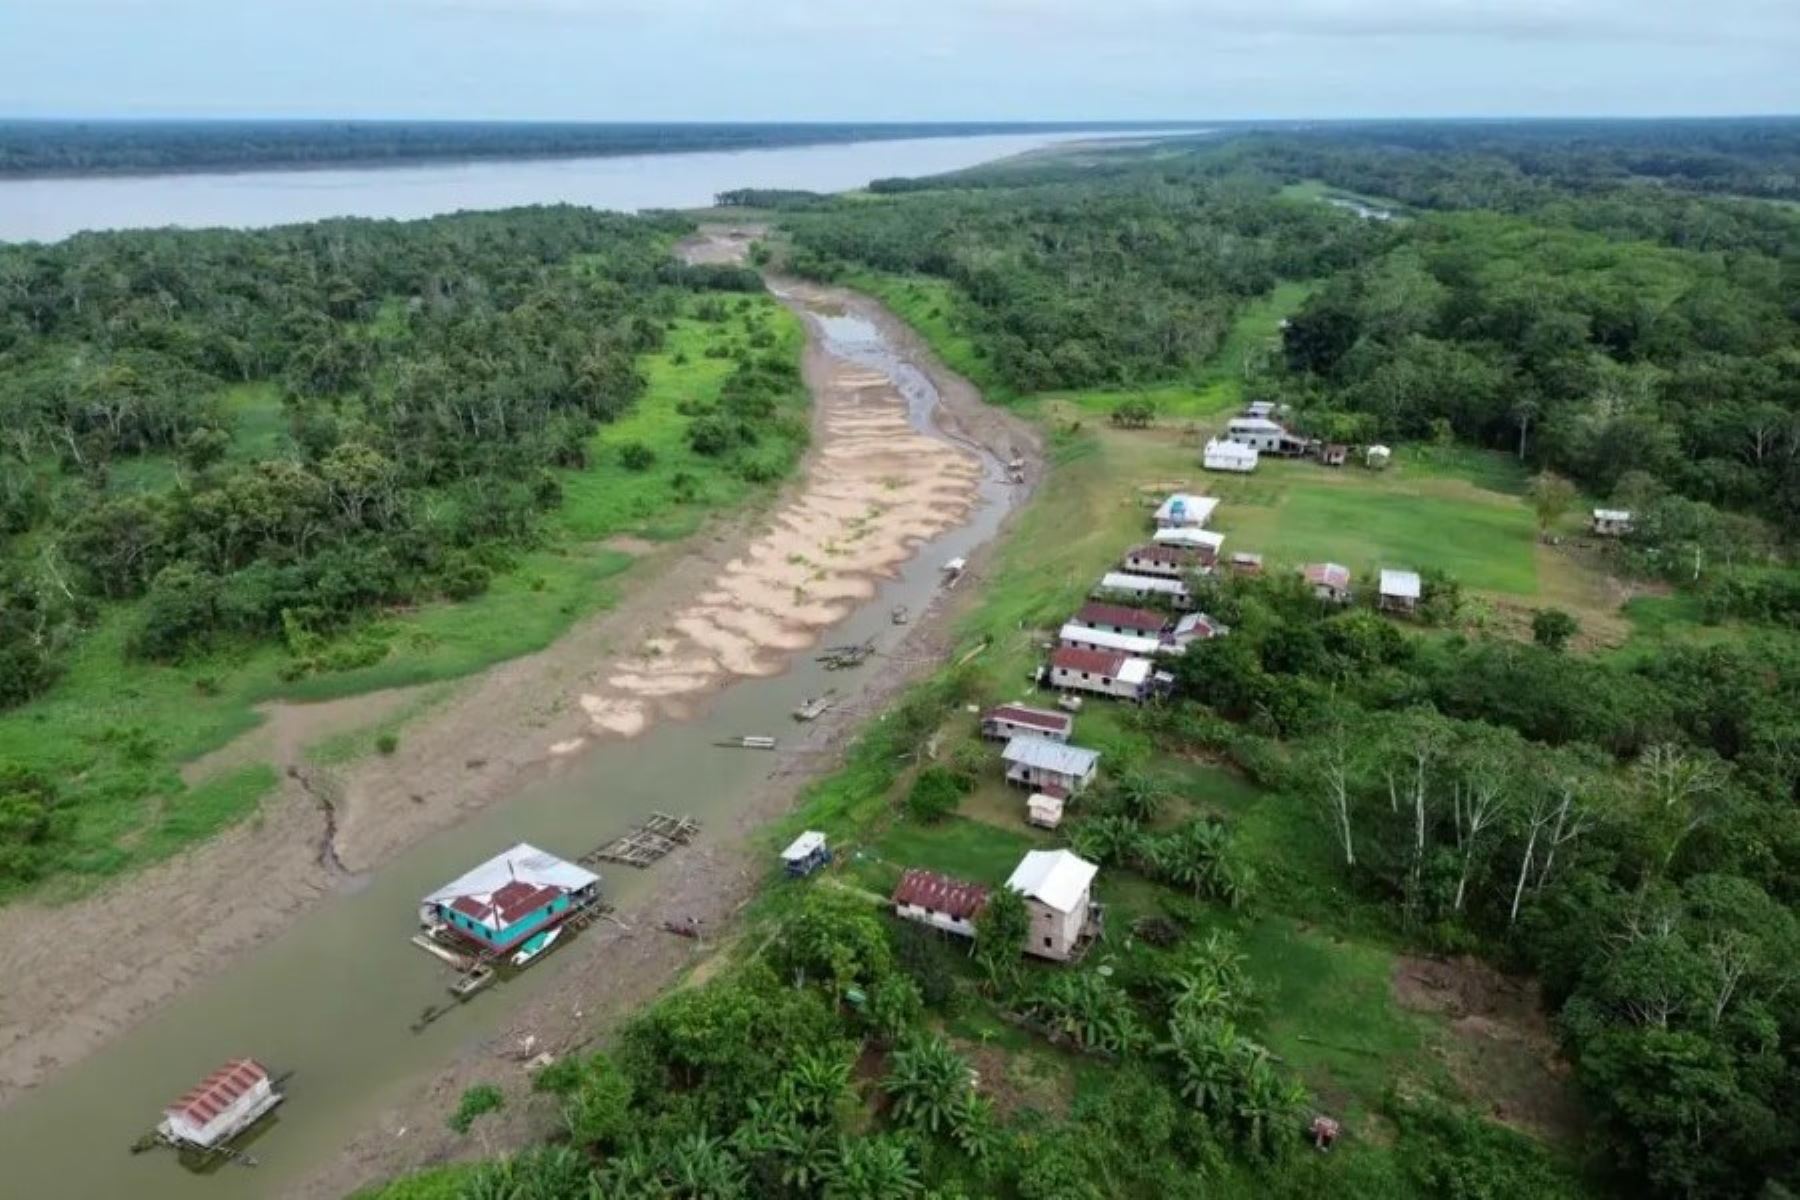 Brasil envía ayuda humanitaria al Estado de Amazonas debido a una sequía extrema